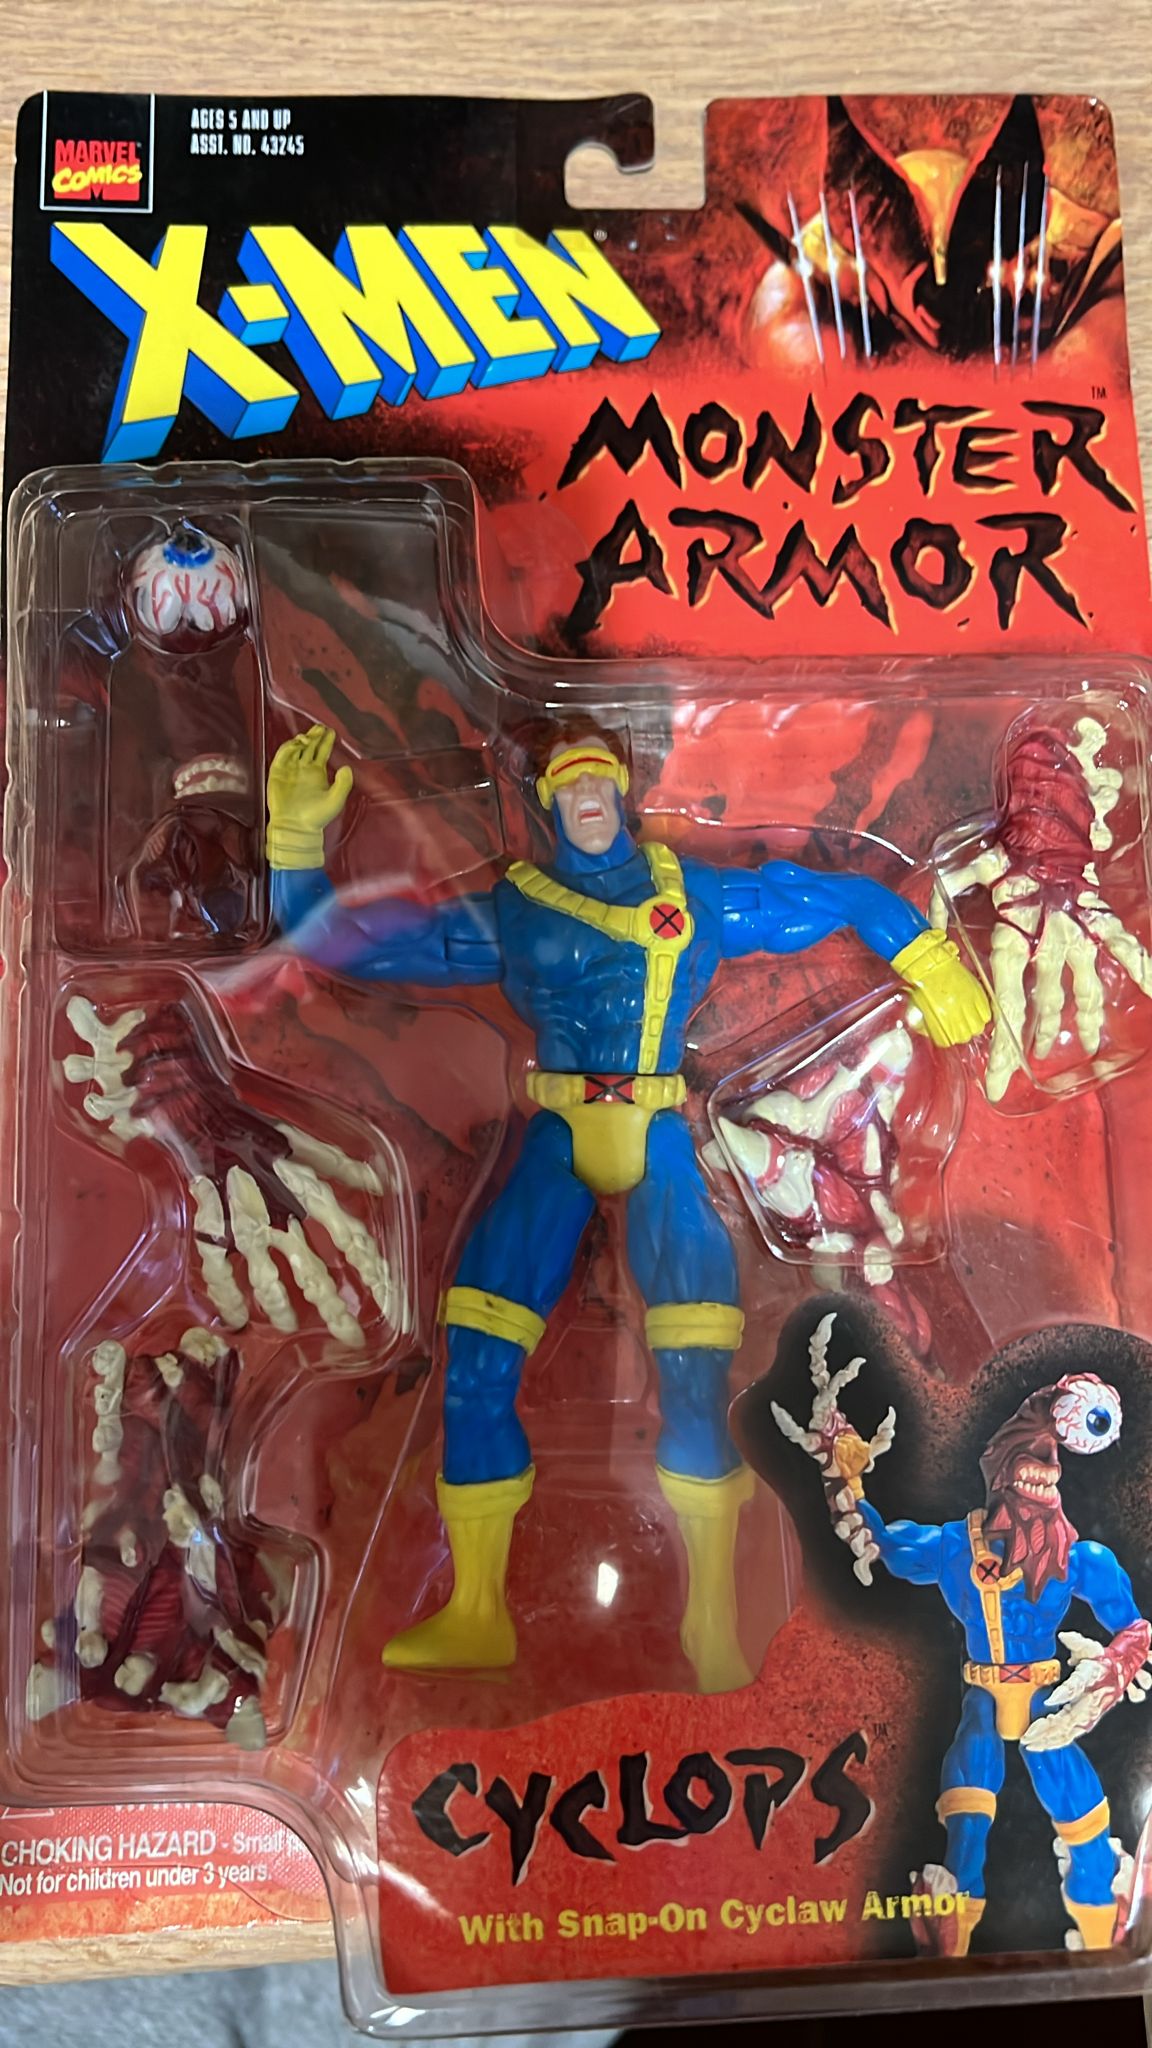 Cyclops - Classic 1997 Marvel X-Men Monster Armor Action Figure - Toy Biz